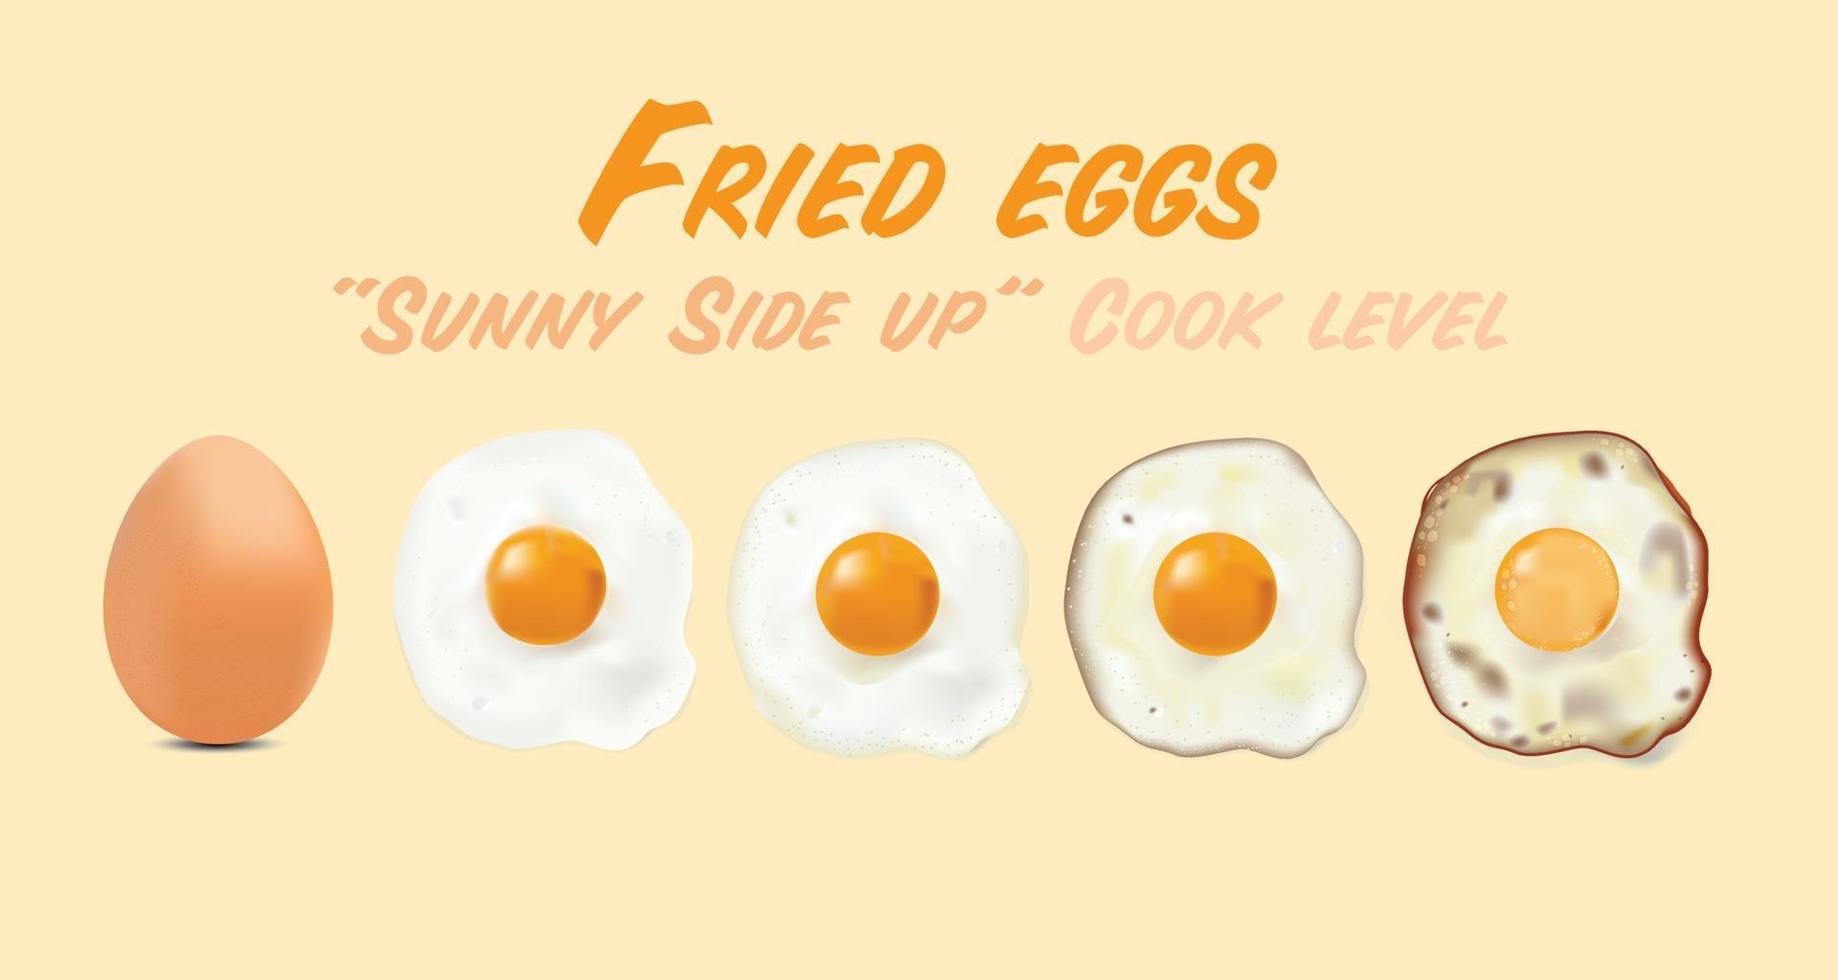 huevos fritos con imagen de huevo crudo, en el nivel de estilo básico del conjunto de cocción, ilustración vectorial sobre fondo de color huevo. vector